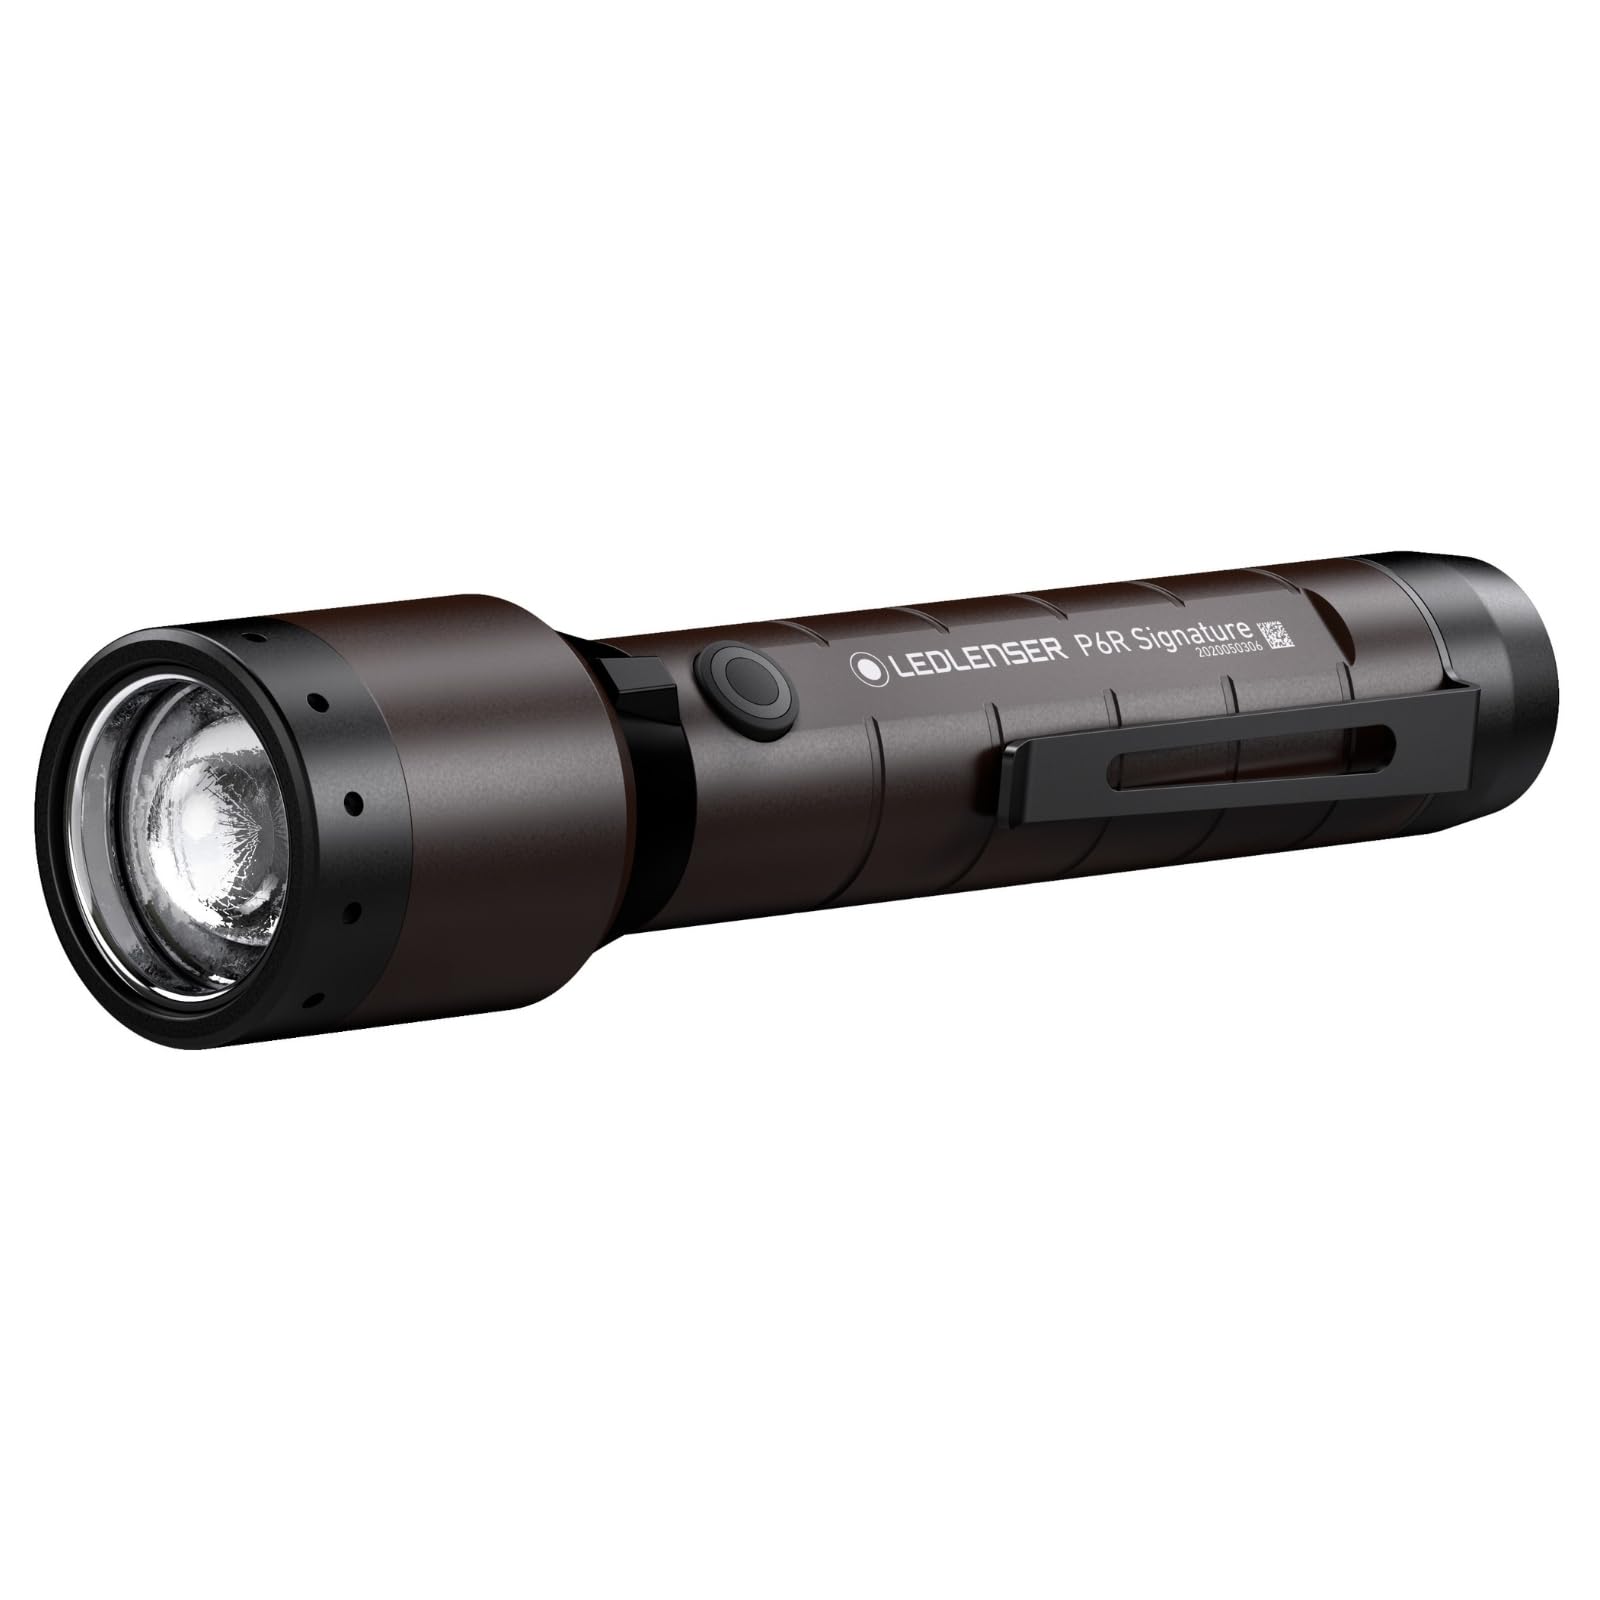 Ledlenser P6R Signature LED Taschenlampe | Led Batterie Taschenlampe fokussierbar | Leuchte hell 1400 Lumen | Lampe mit Advanced Focus | 240 m Leuchtweite | 60 Stunden Leuchtdauer | Emergency Light